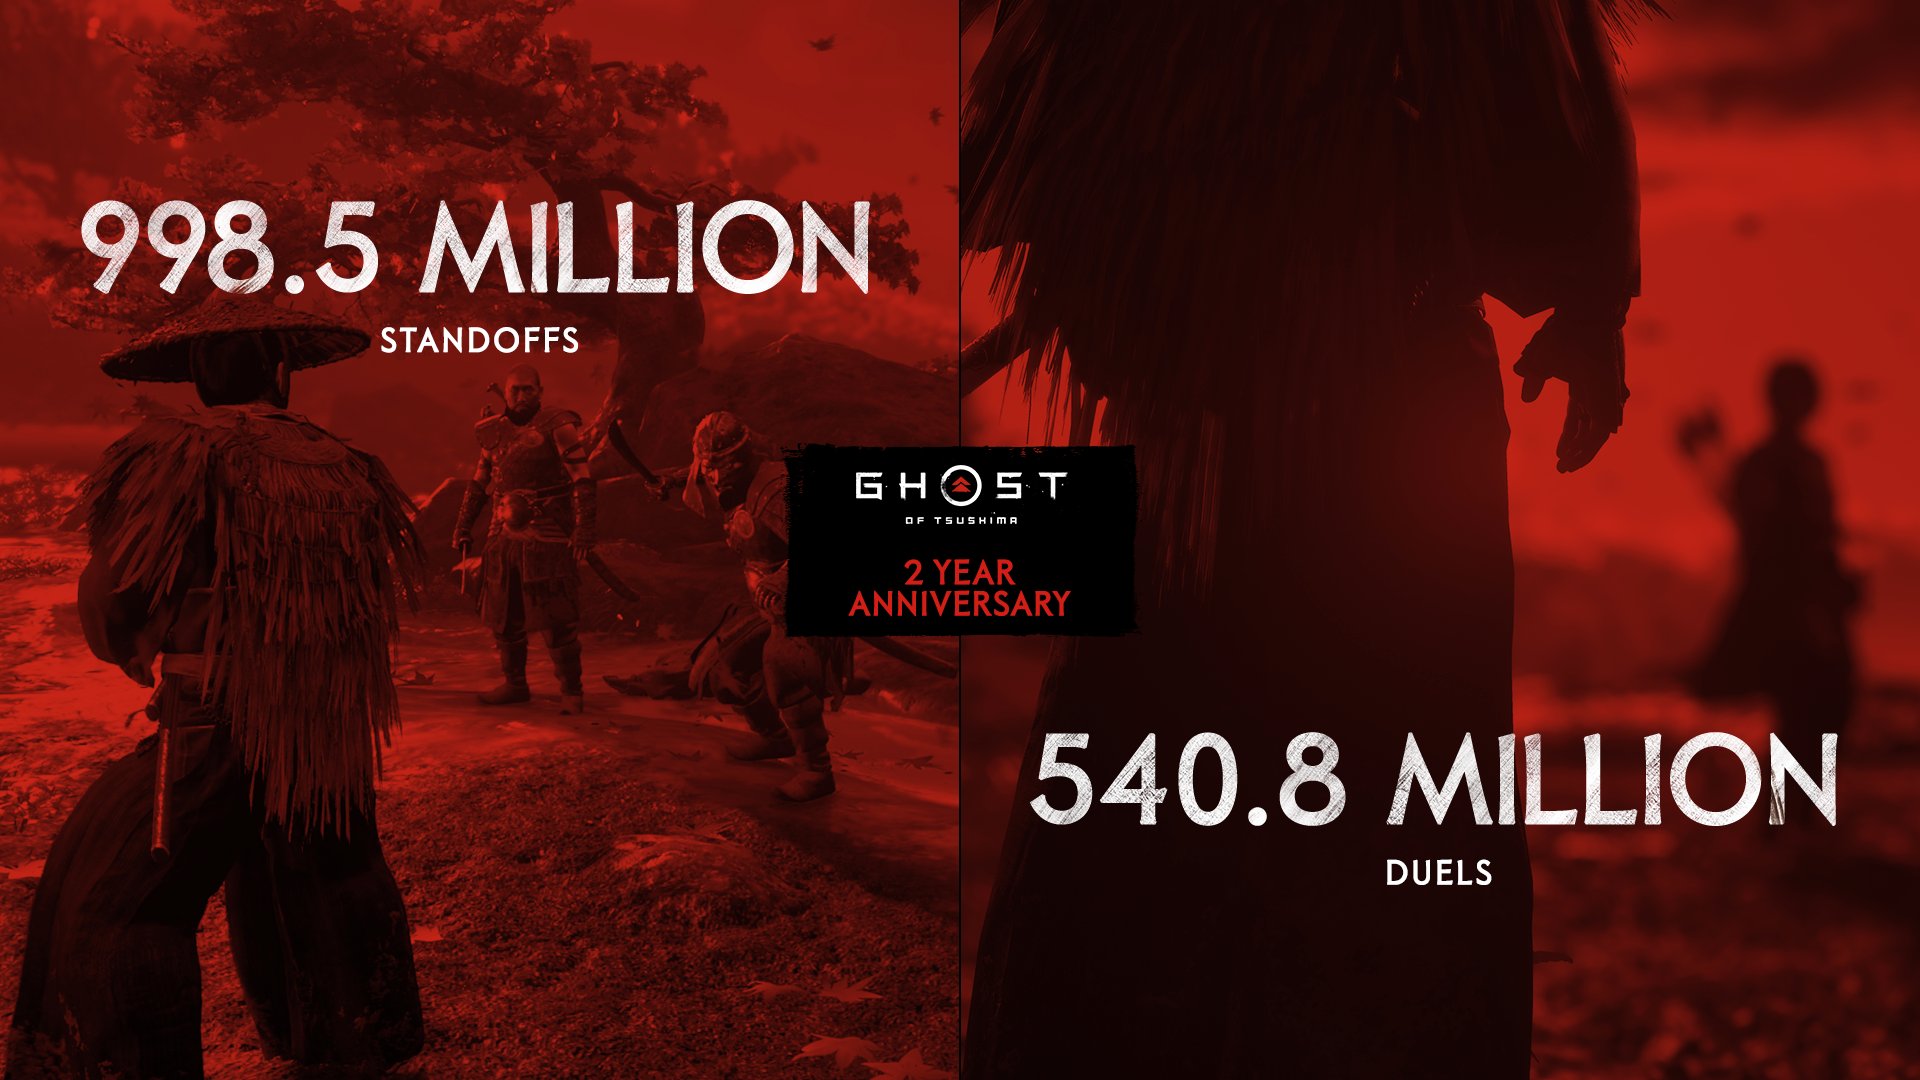 998.5 million standoffs, 540.8 million duels